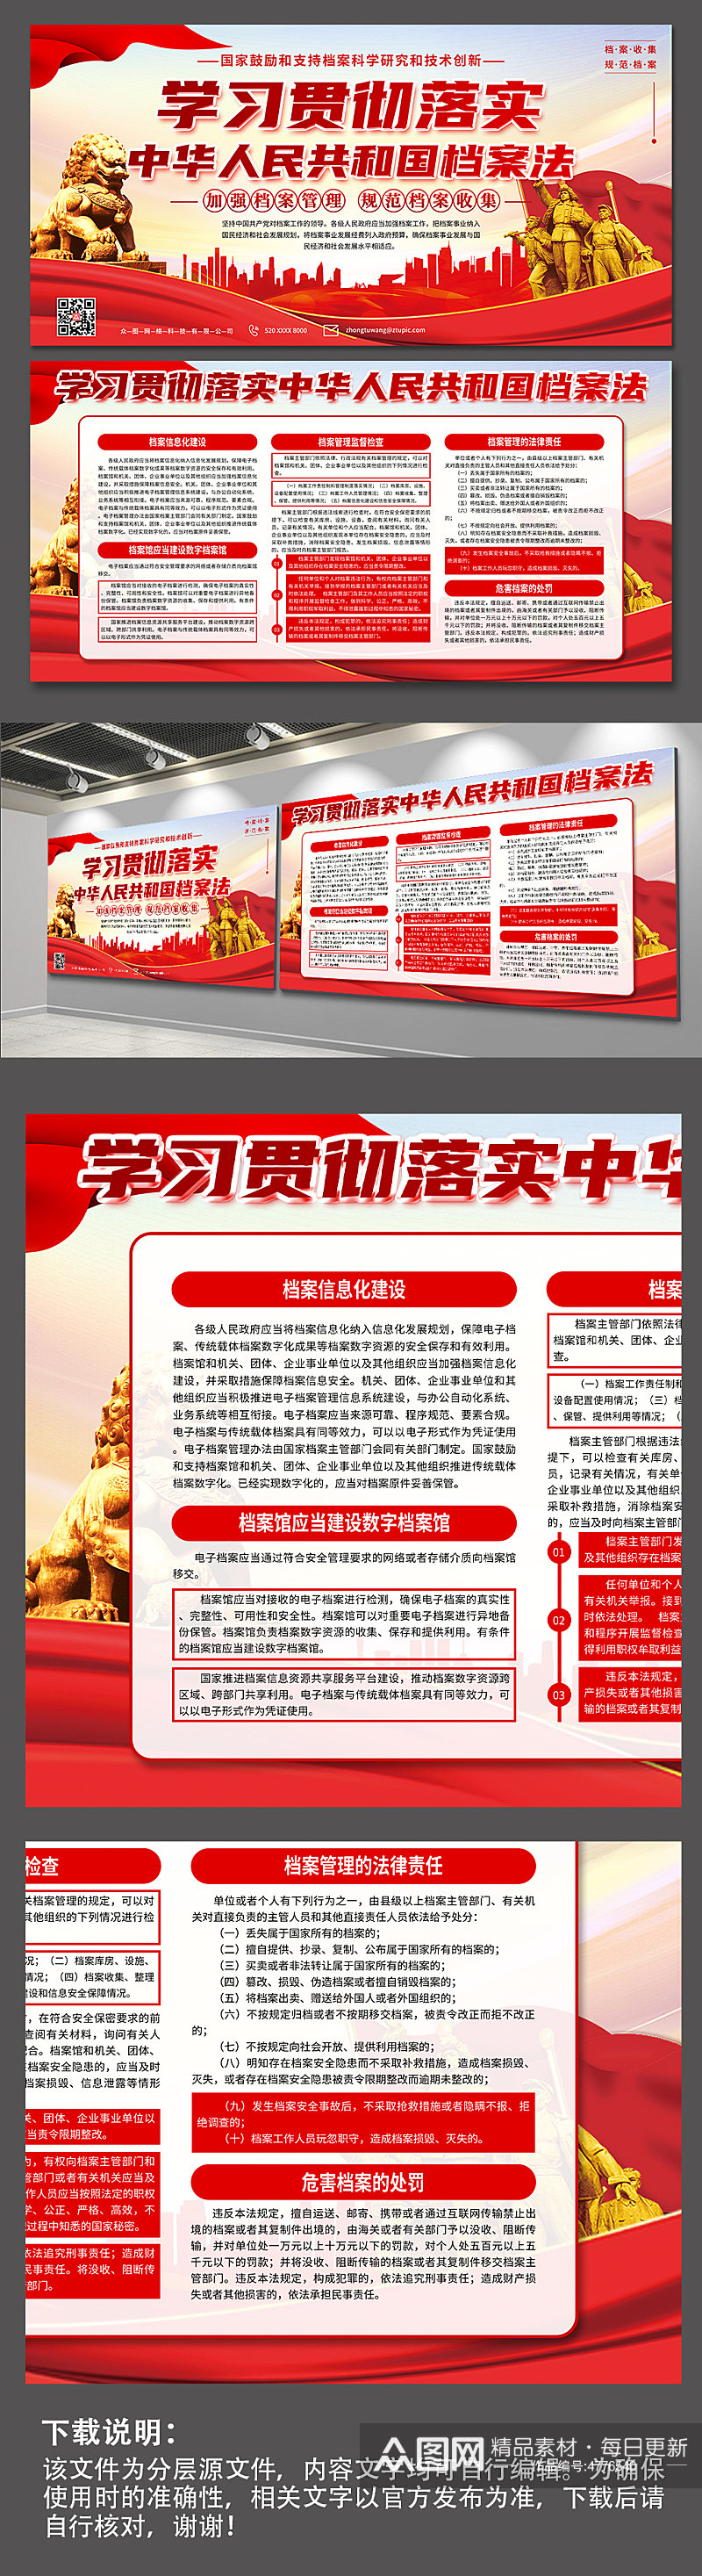 中华人民共和国档案法党建展板宣传栏素材